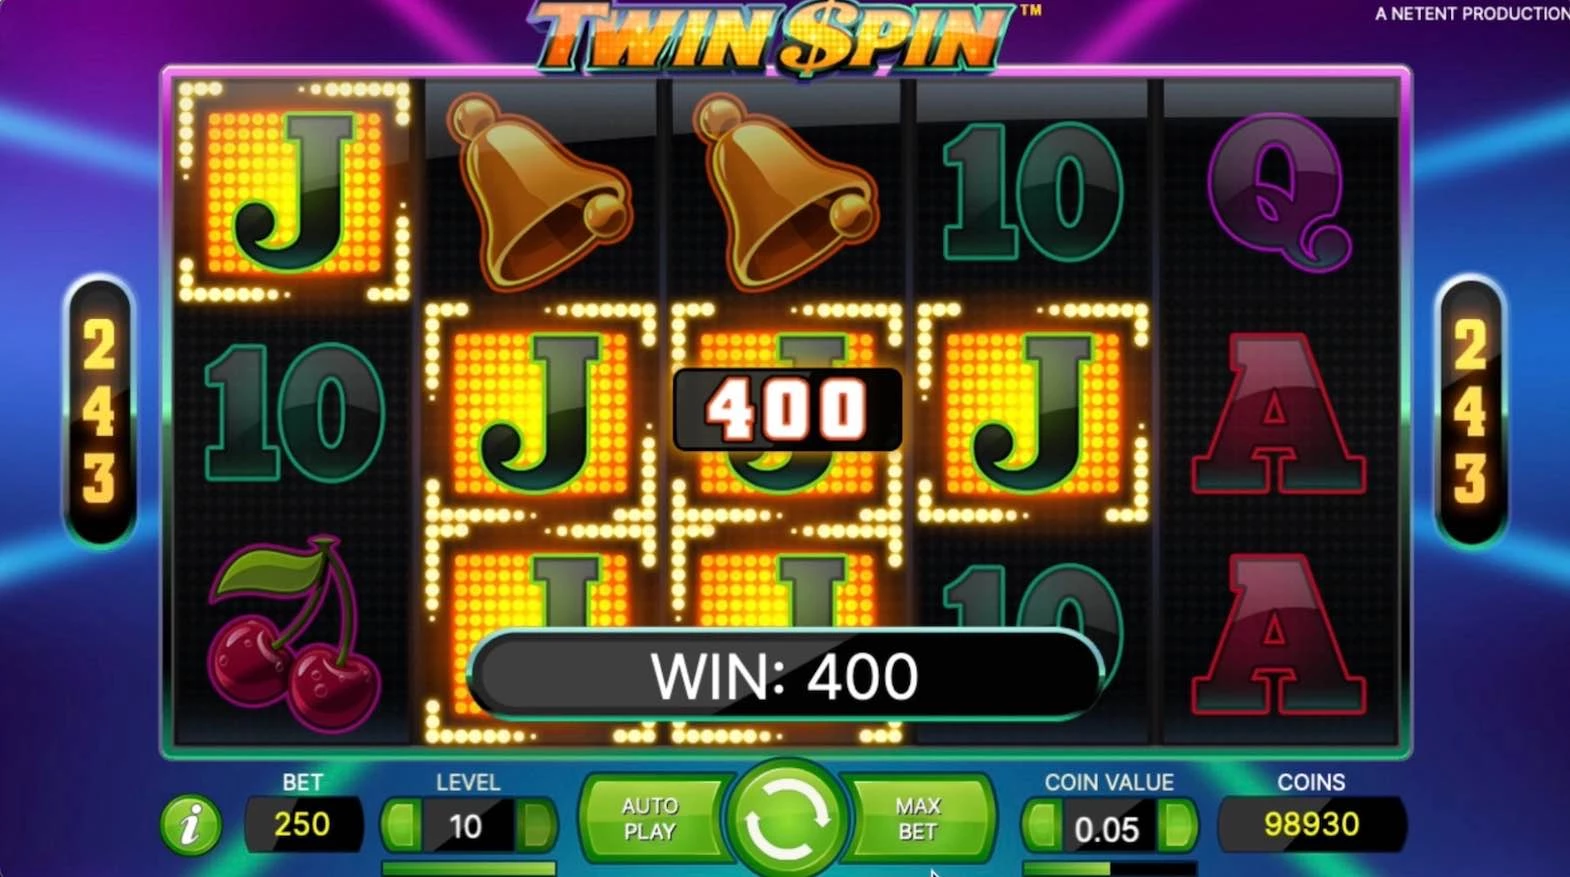 Twin Spin (NetEnt) Jacks Won $400